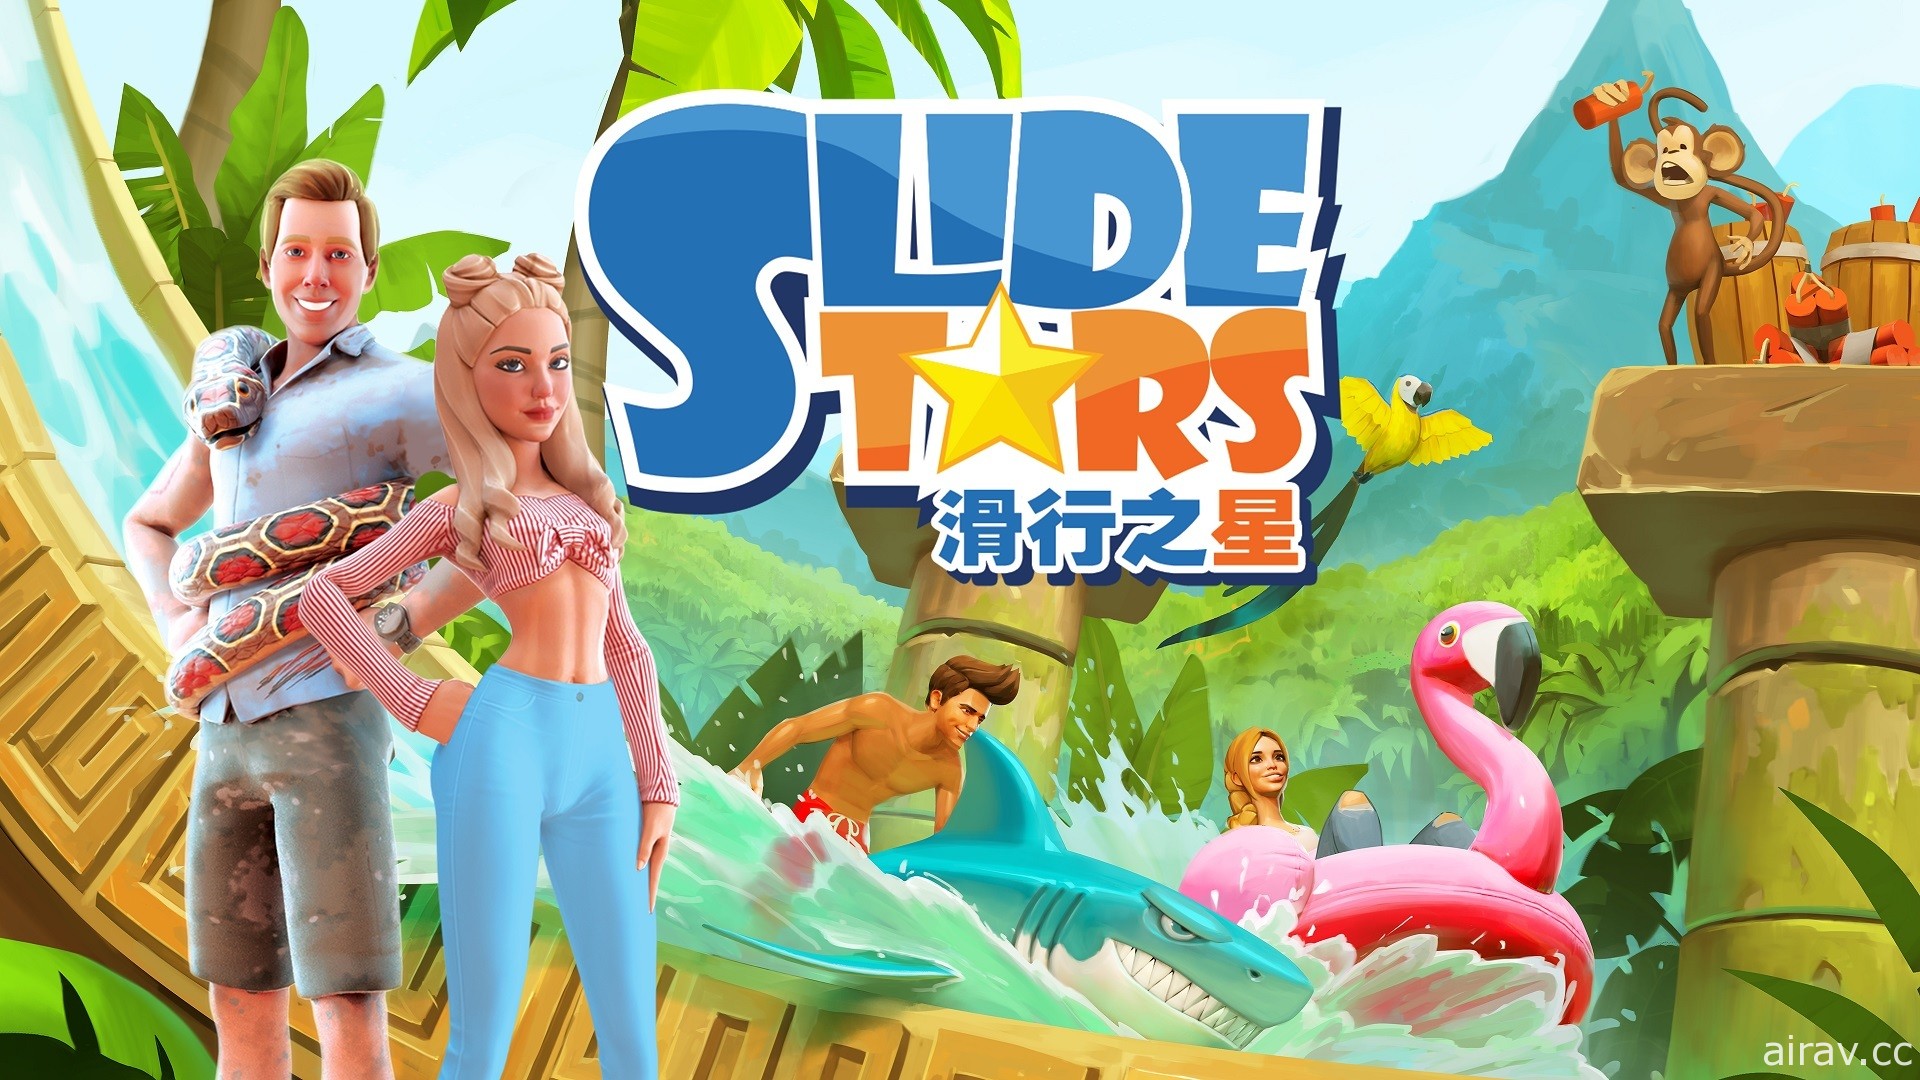 《滑行之星 Slide Stars》现已登陆 PS4 及 Switch 亚洲区商店